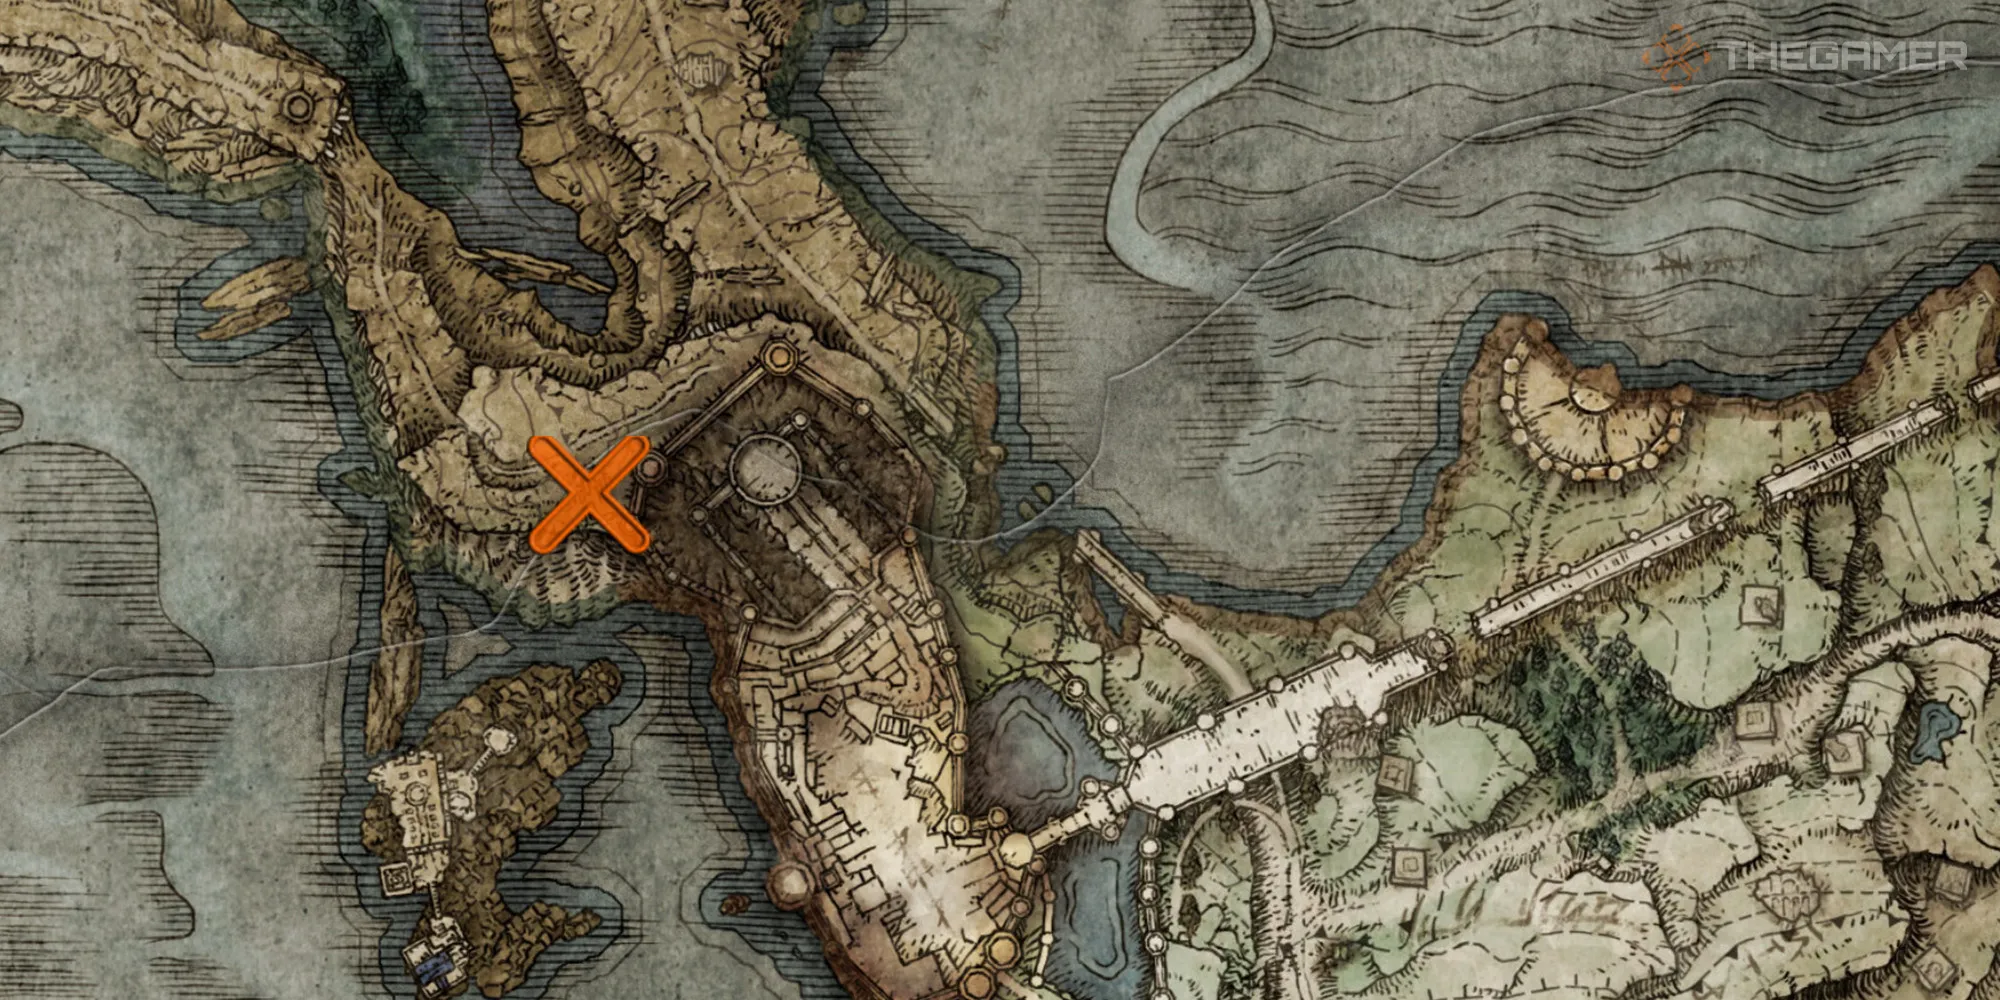 在《埃尔登环》中显示利尔尼亚伊丽丝教堂内术士索普斯的位置的地图